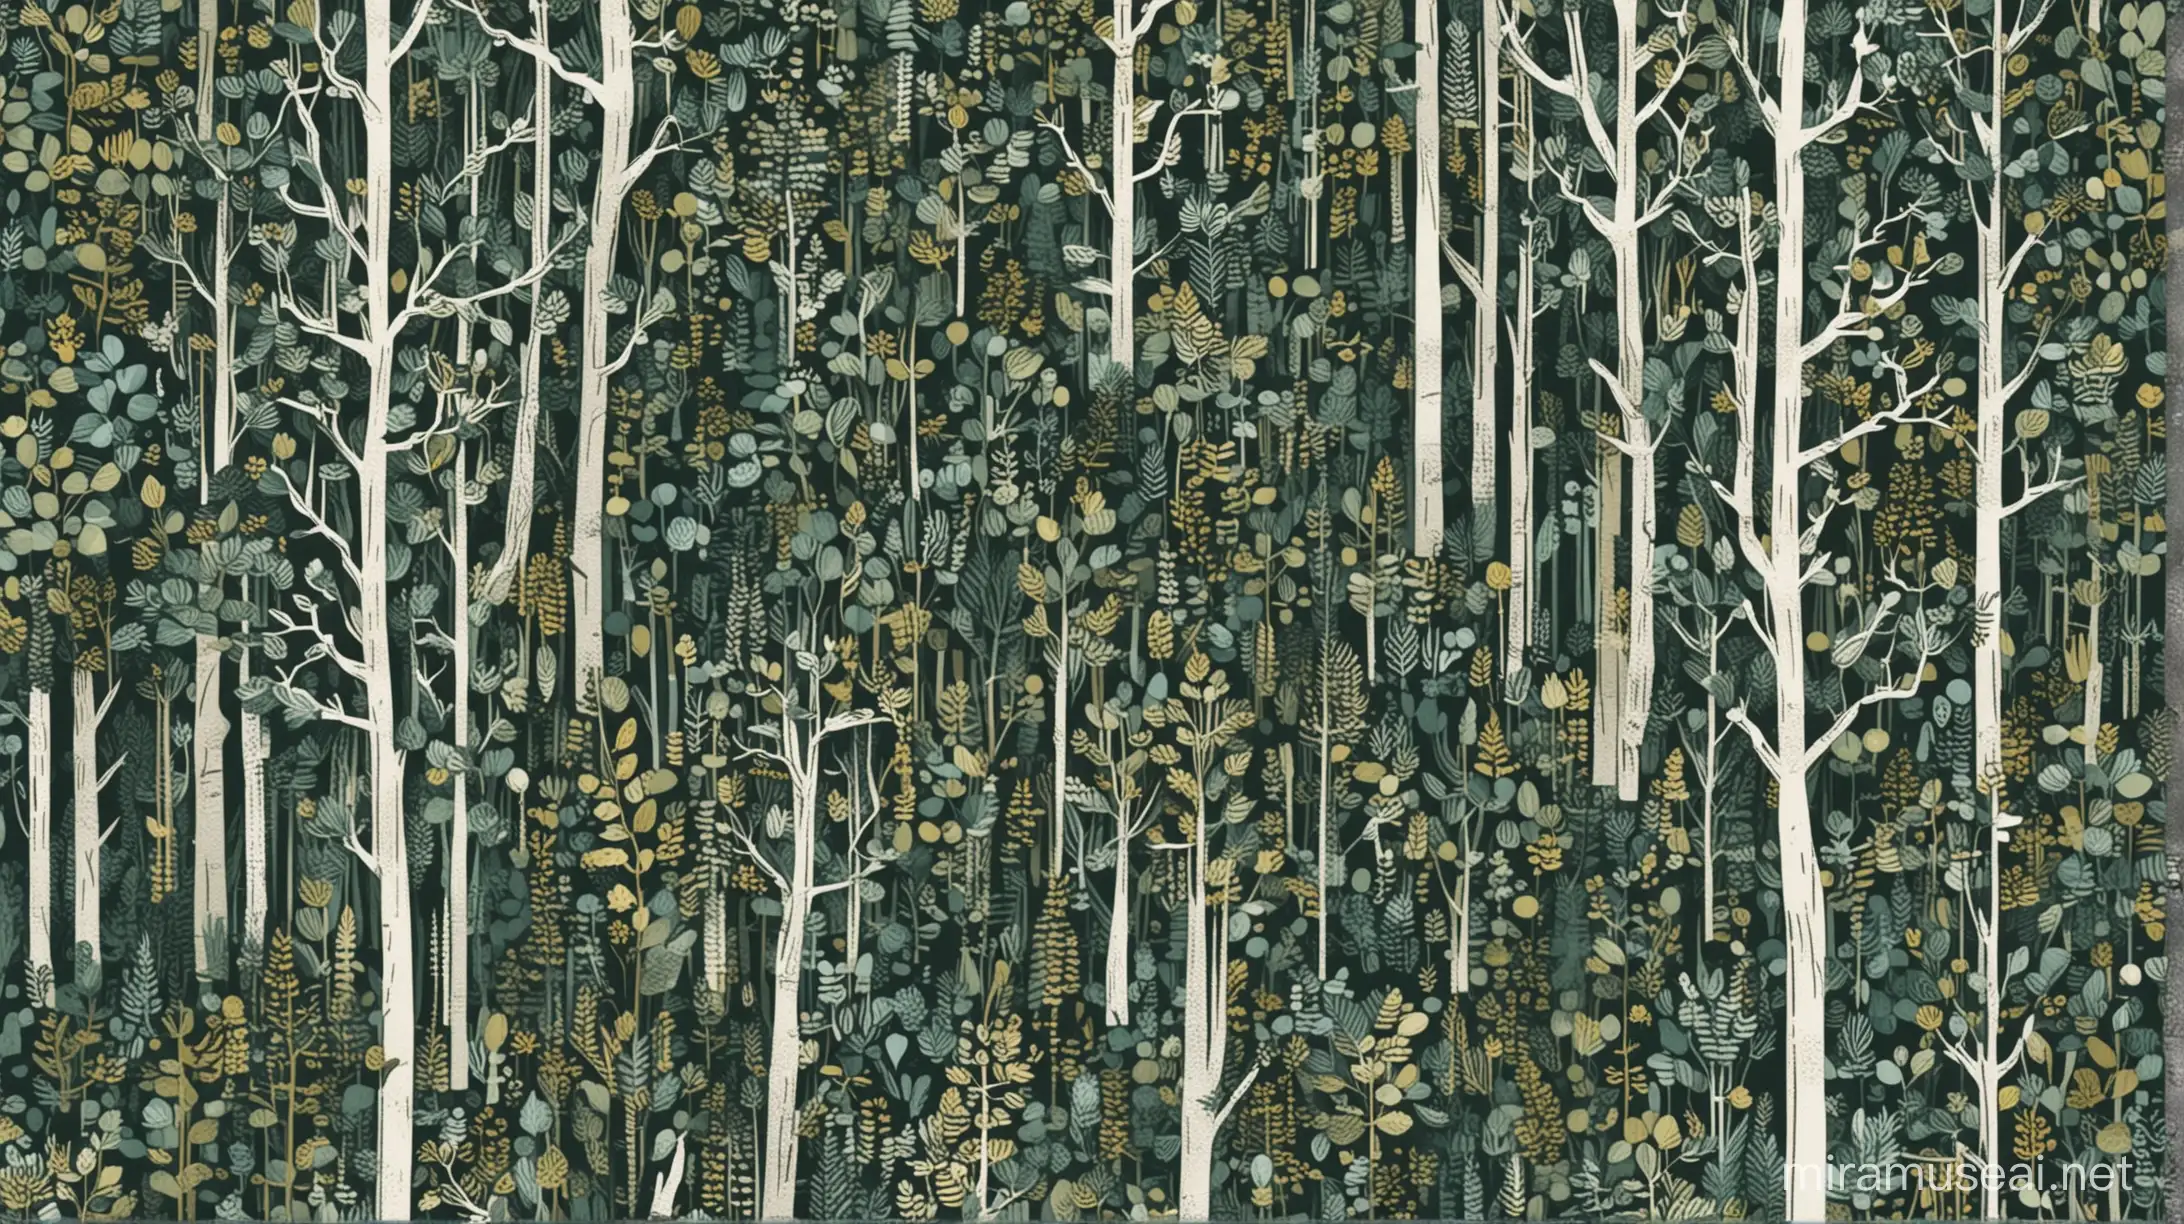 Minimalist Finnish Forest Scene with Scandinavian Design Elements